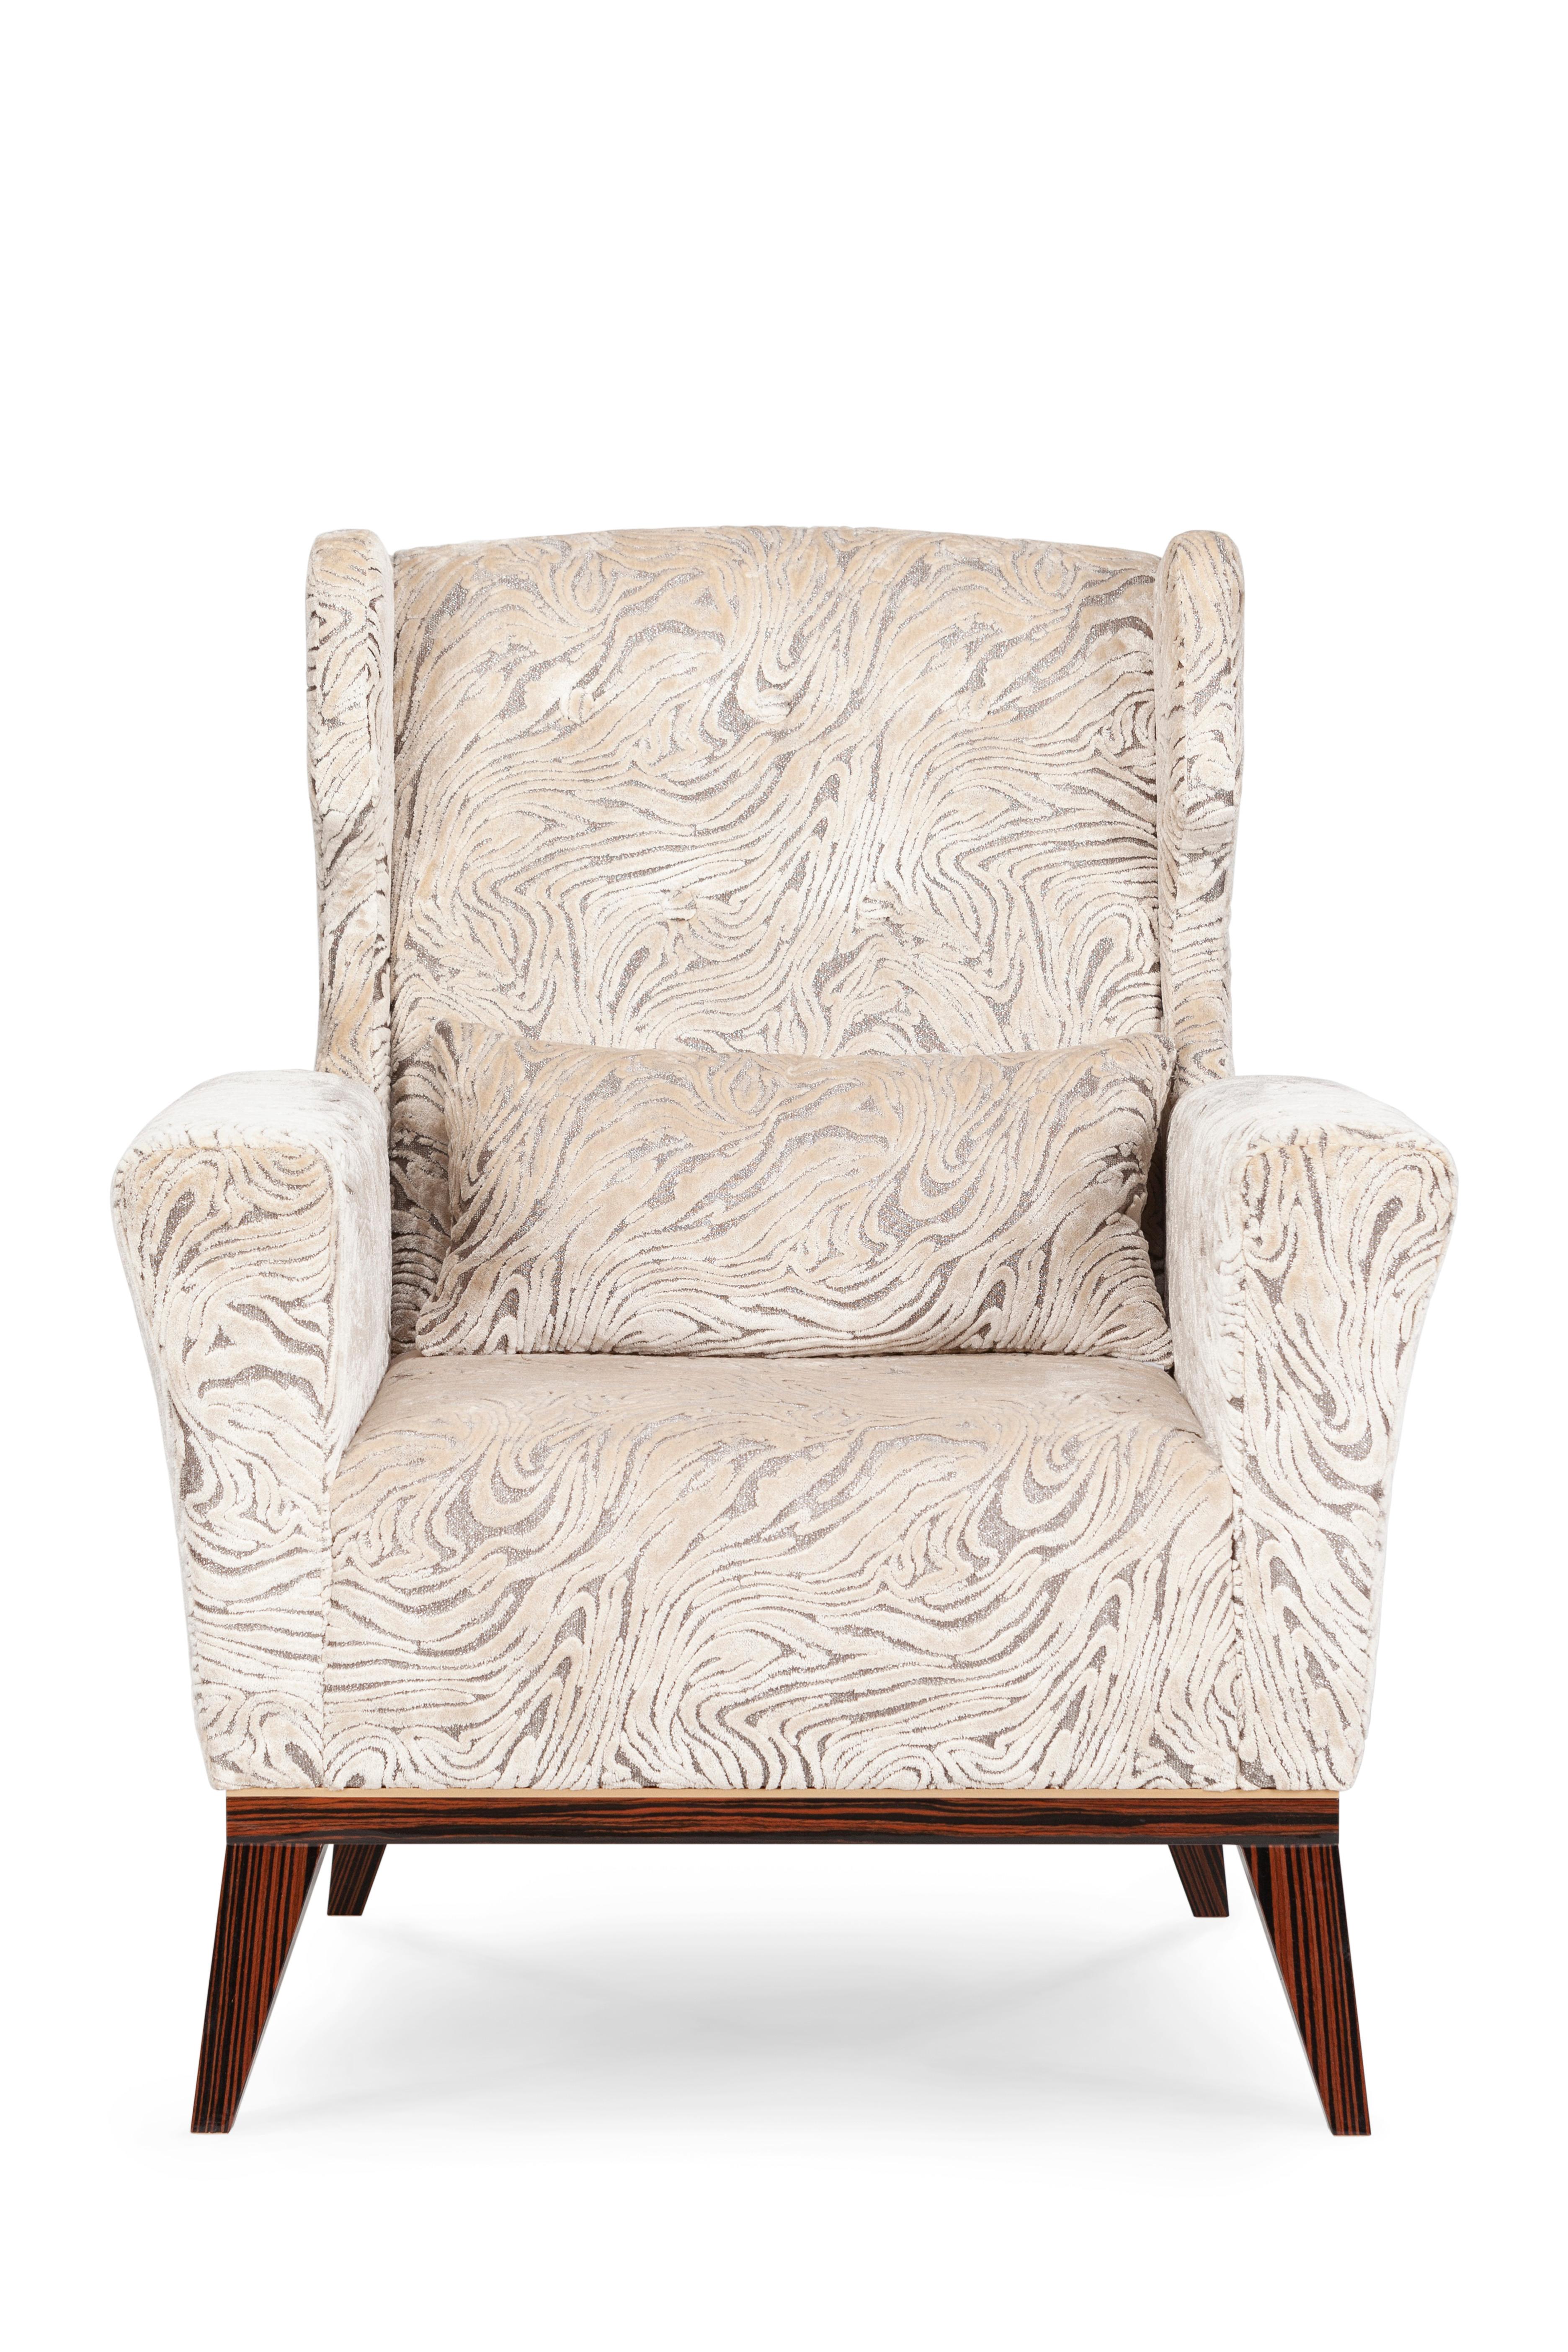 Fauteuil Genebra, Collection S, fabriqué à la main au Portugal - Europe par GF Modern.

Le fauteuil Genebra est conçu pour donner à votre salon un aspect vintage sophistiqué. Tapissé de velours beige à motif jacquard et incrusté de poudre de bronze